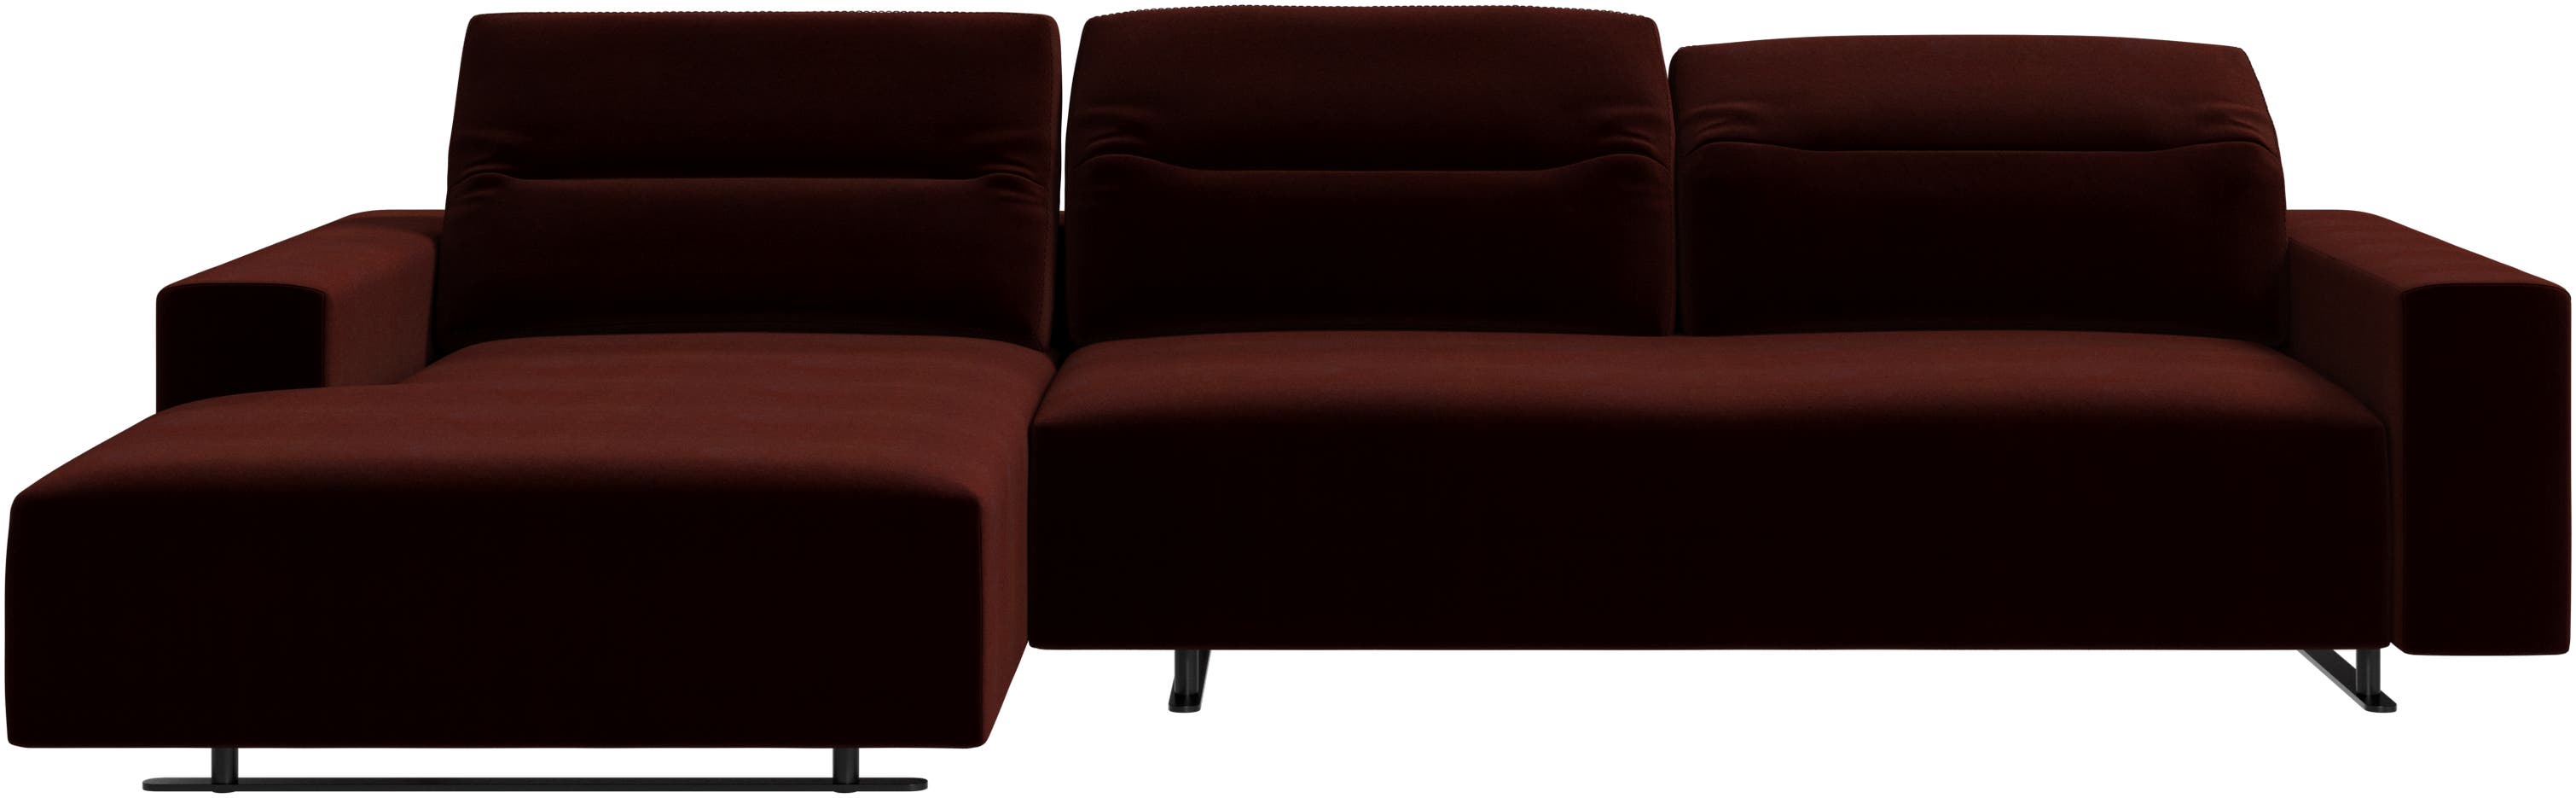 Hampton soffa med justerbart ryggstöd och loungemodul på vänster sida, förvaring på höger sida